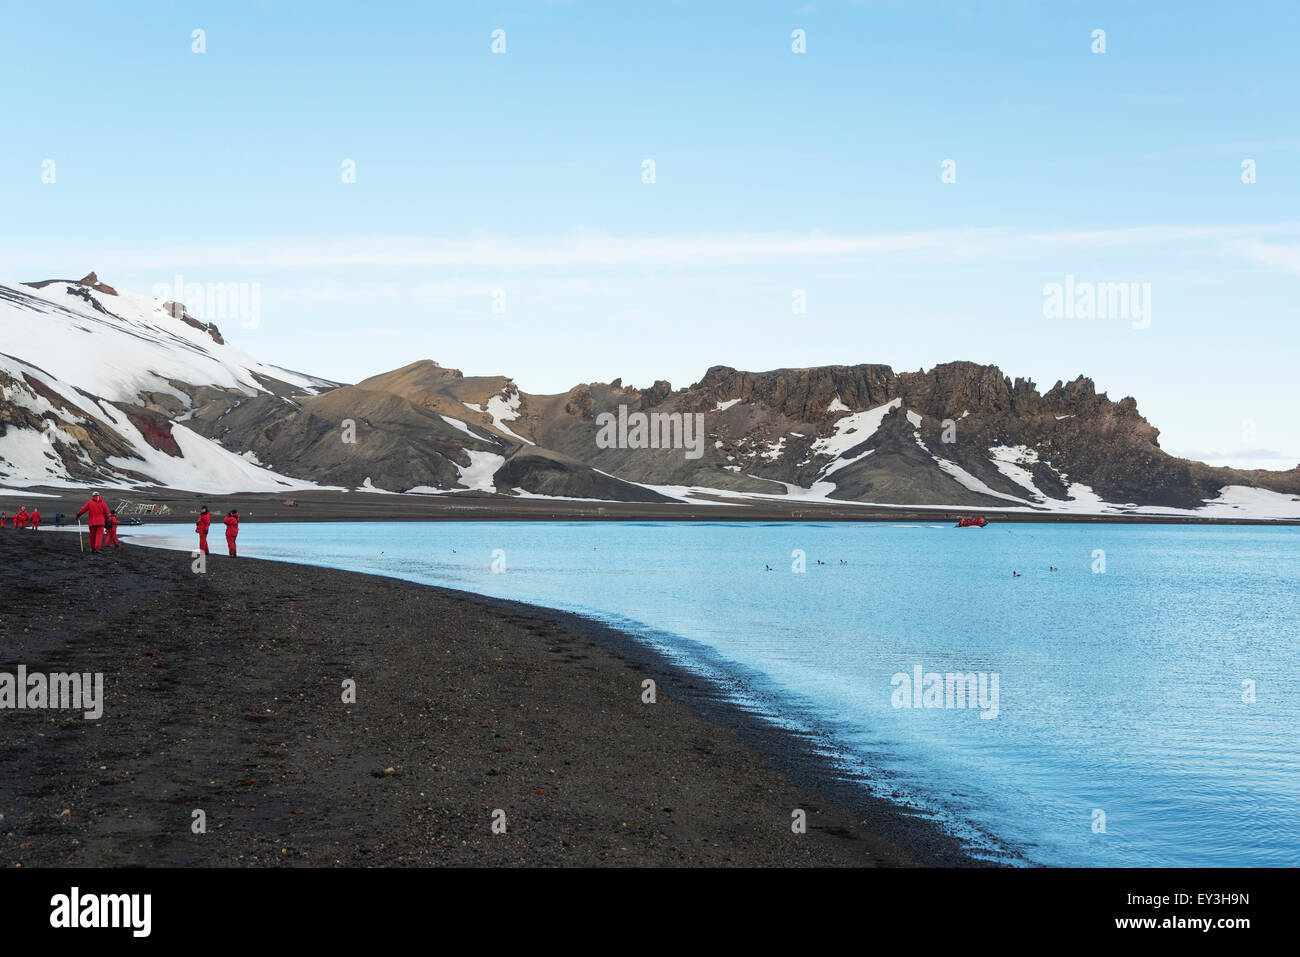 Gruppo di persone su una spiaggia sull isola Deception, montagne coperte di neve in background. Foto Stock